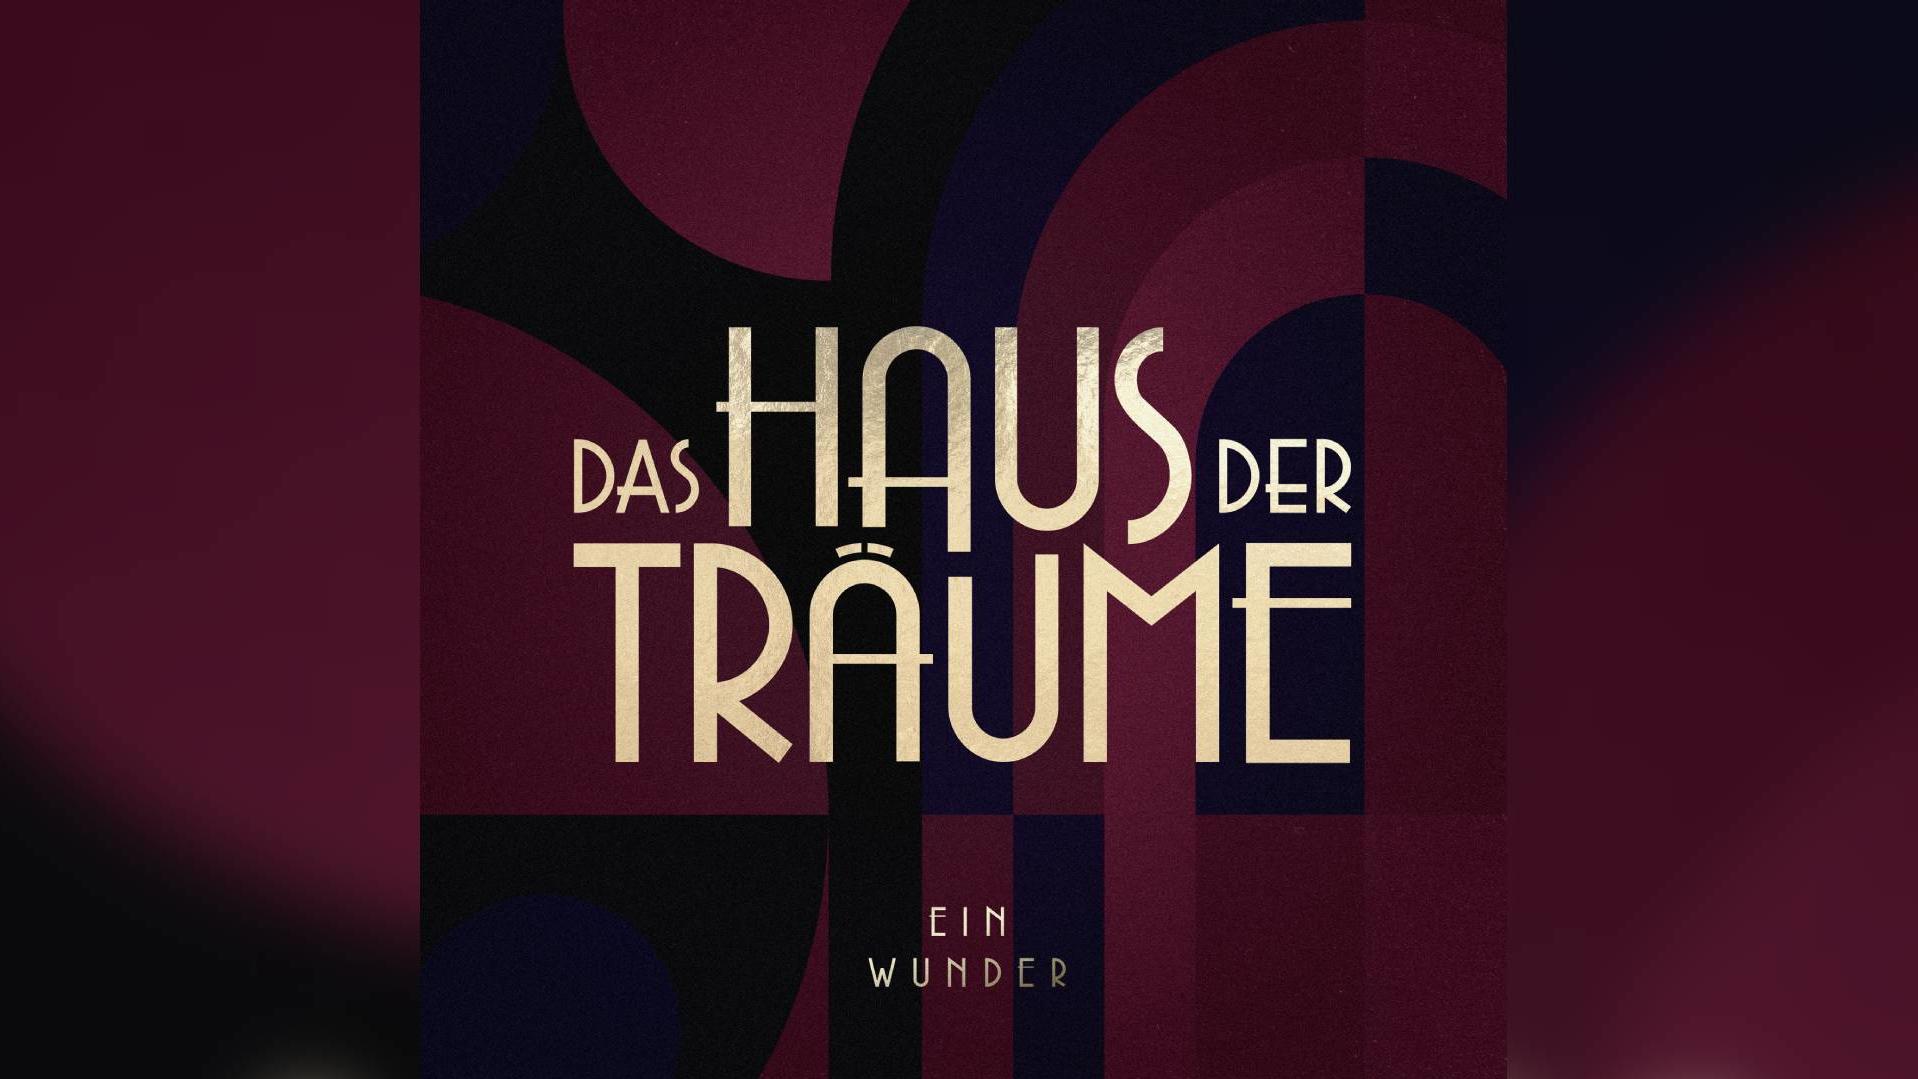 Mit "Ein Wunder" von Henning Fuchs feat. Jesper Munk, Anselm Bresgott & Ludwig Simon erscheint die erste Single aus dem Soundtrack zum Streaming-Highlight "Das Haus der Träume".